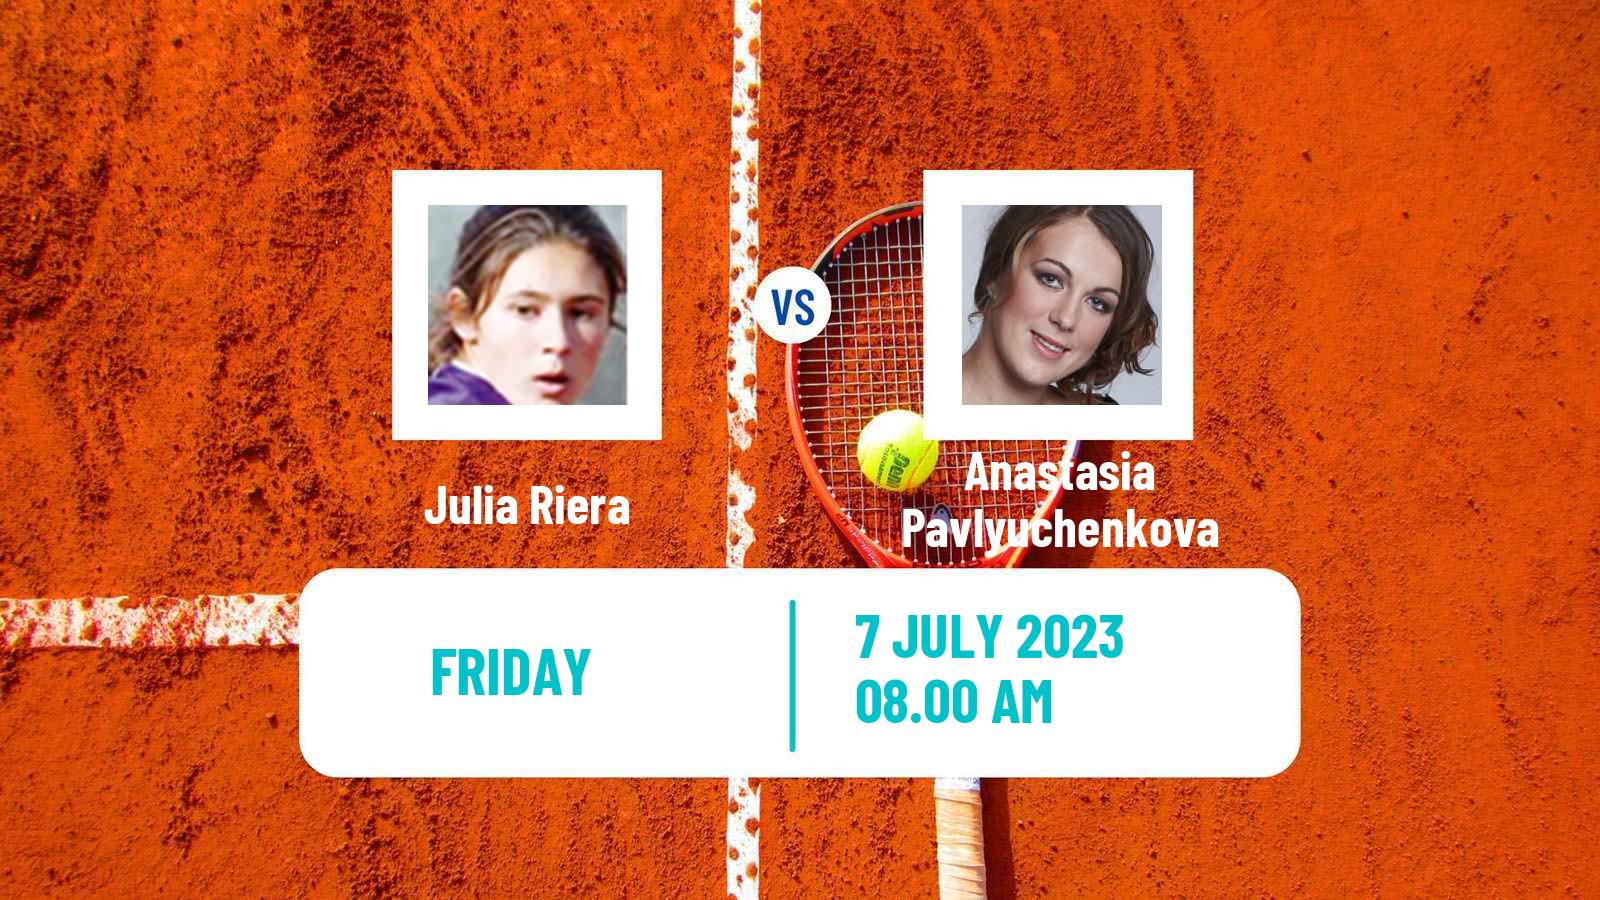 Tennis ITF W60 Montpellier Women Julia Riera - Anastasia Pavlyuchenkova